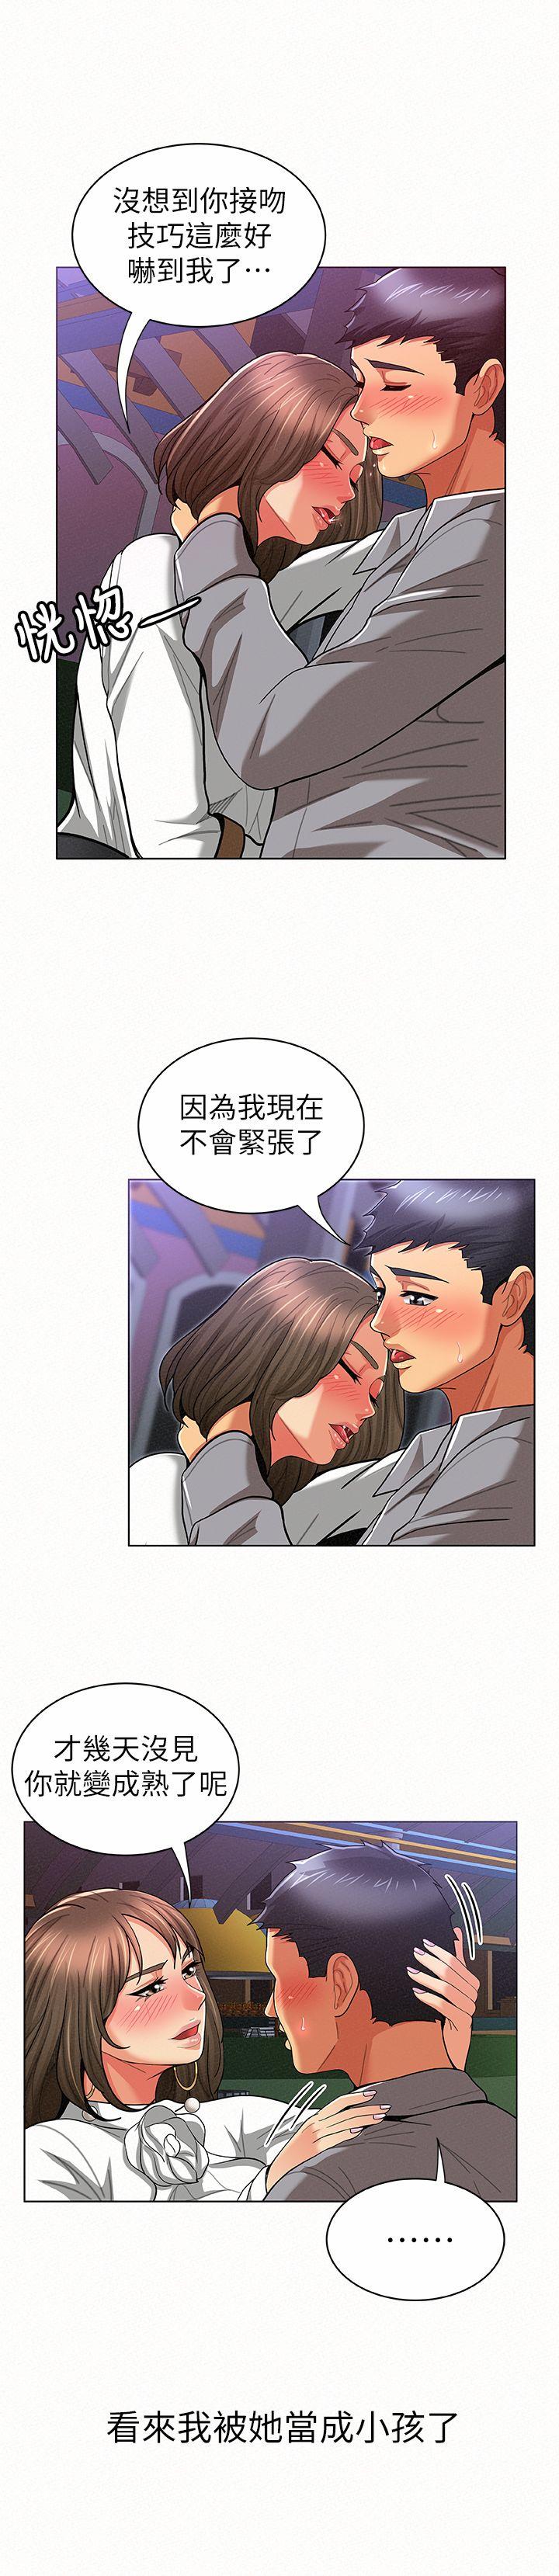 韩国污漫画 報告夫人 第15话-排长夫人的实战教学 7